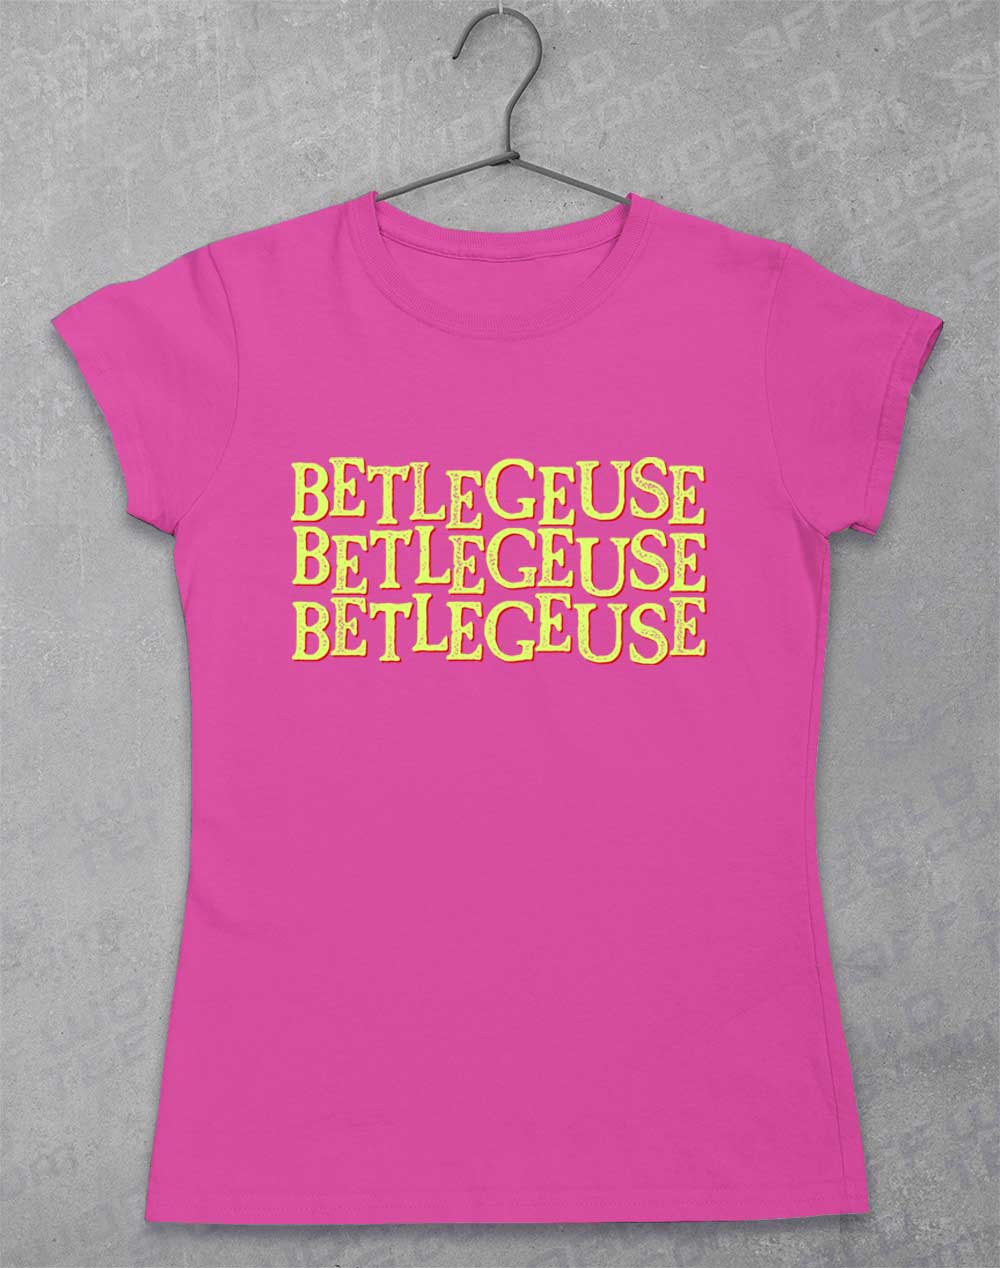 Azalea - Betelgeuse Betelgeuse Betelgeuse Women's T-Shirt